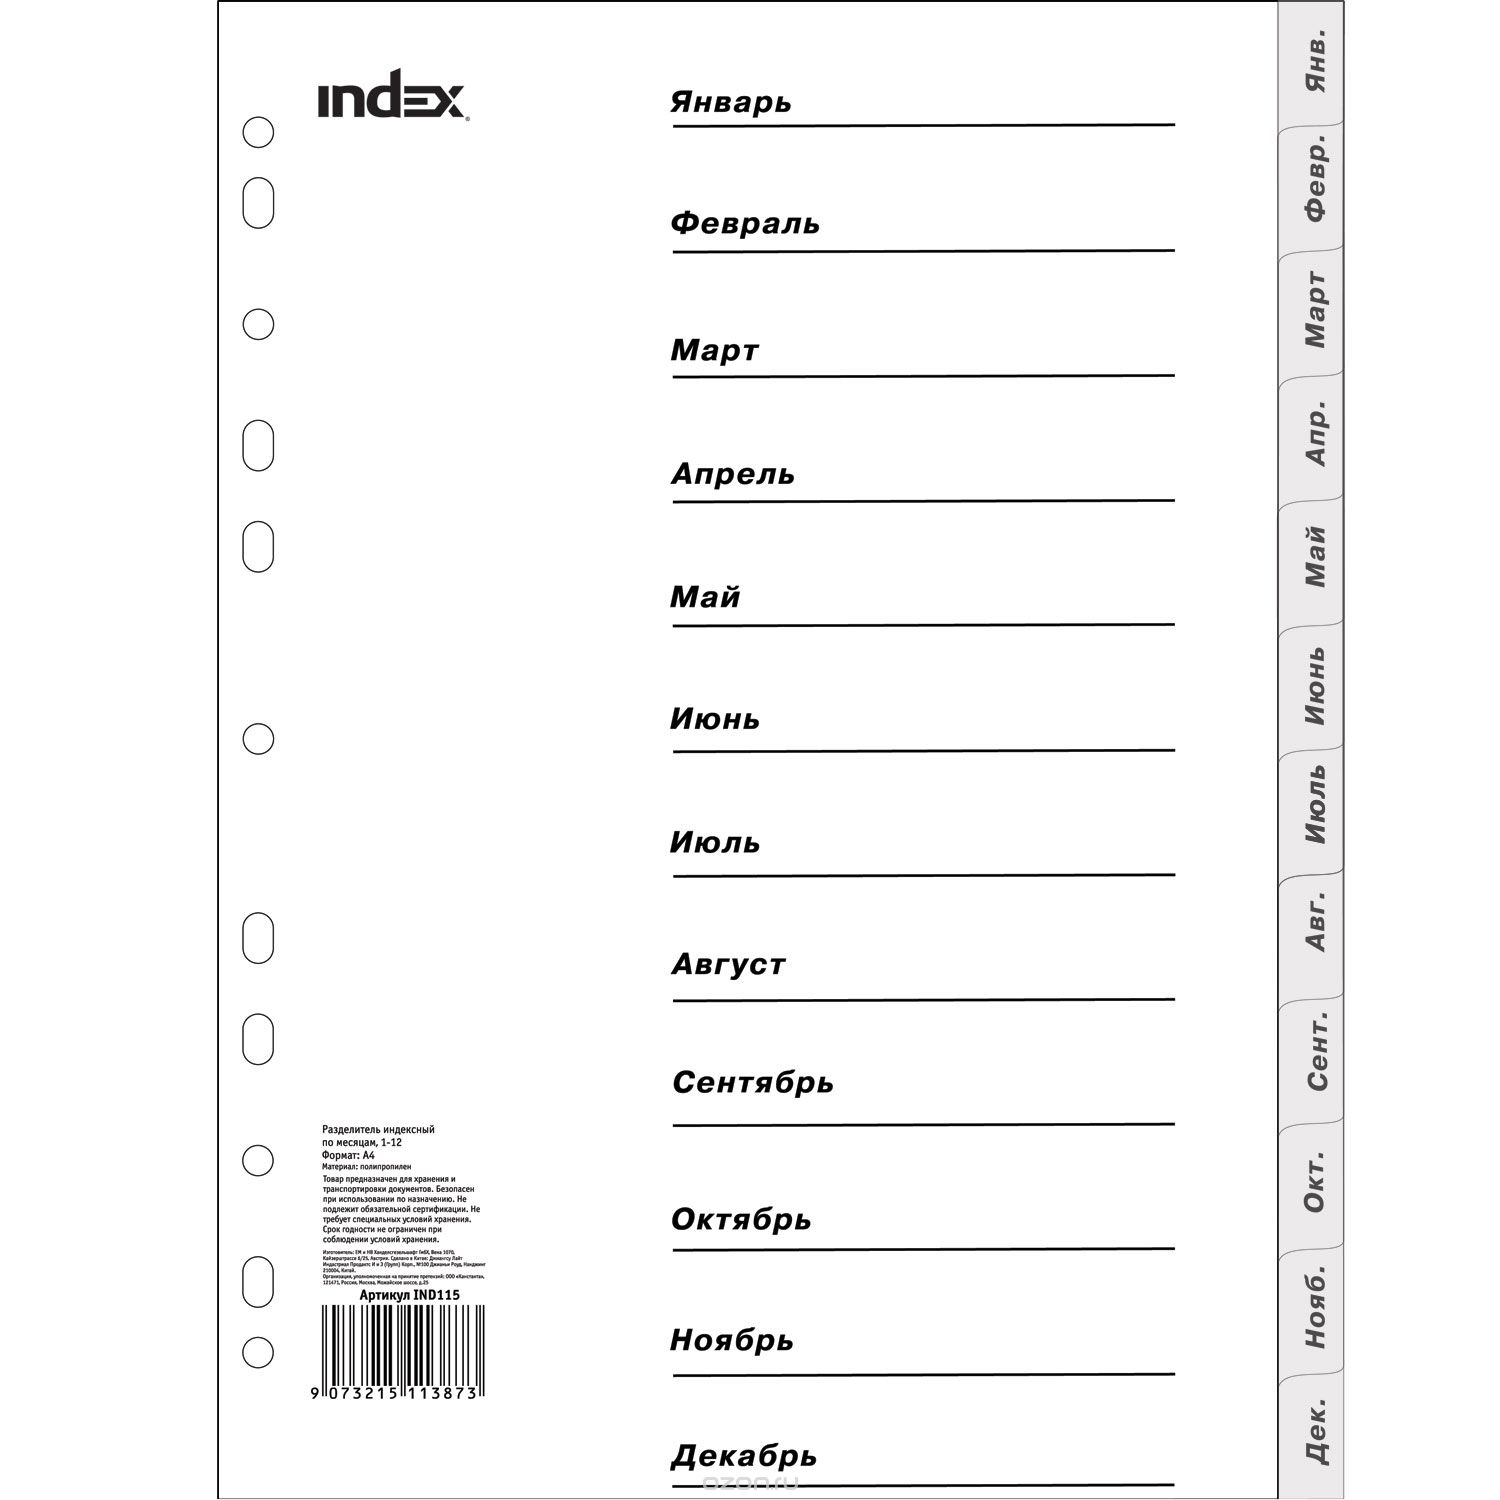 Index    - 4